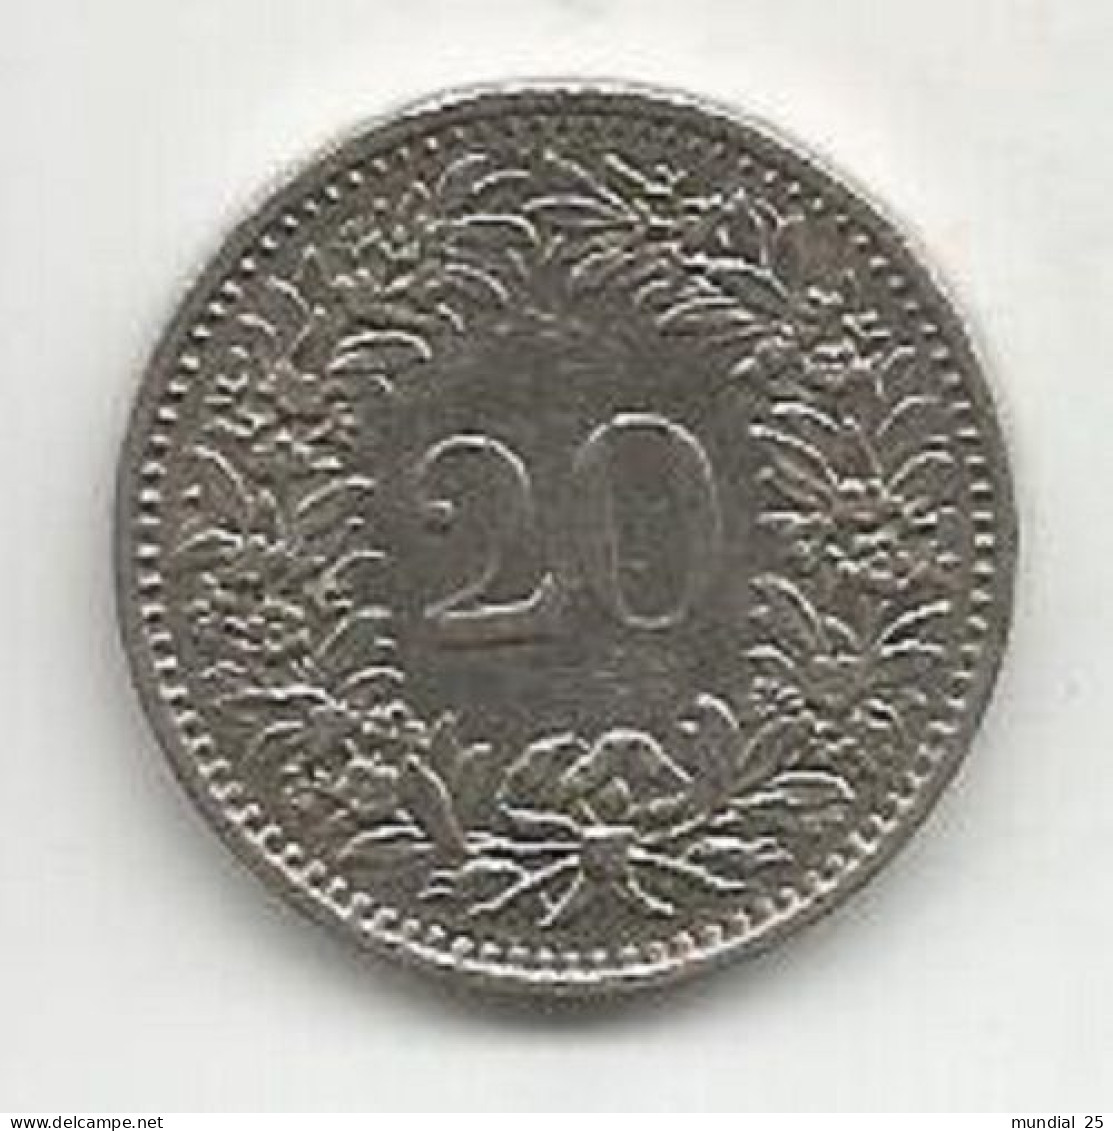 SWITZERLAND 20 RAPPEN 1976 - 20 Centimes / Rappen